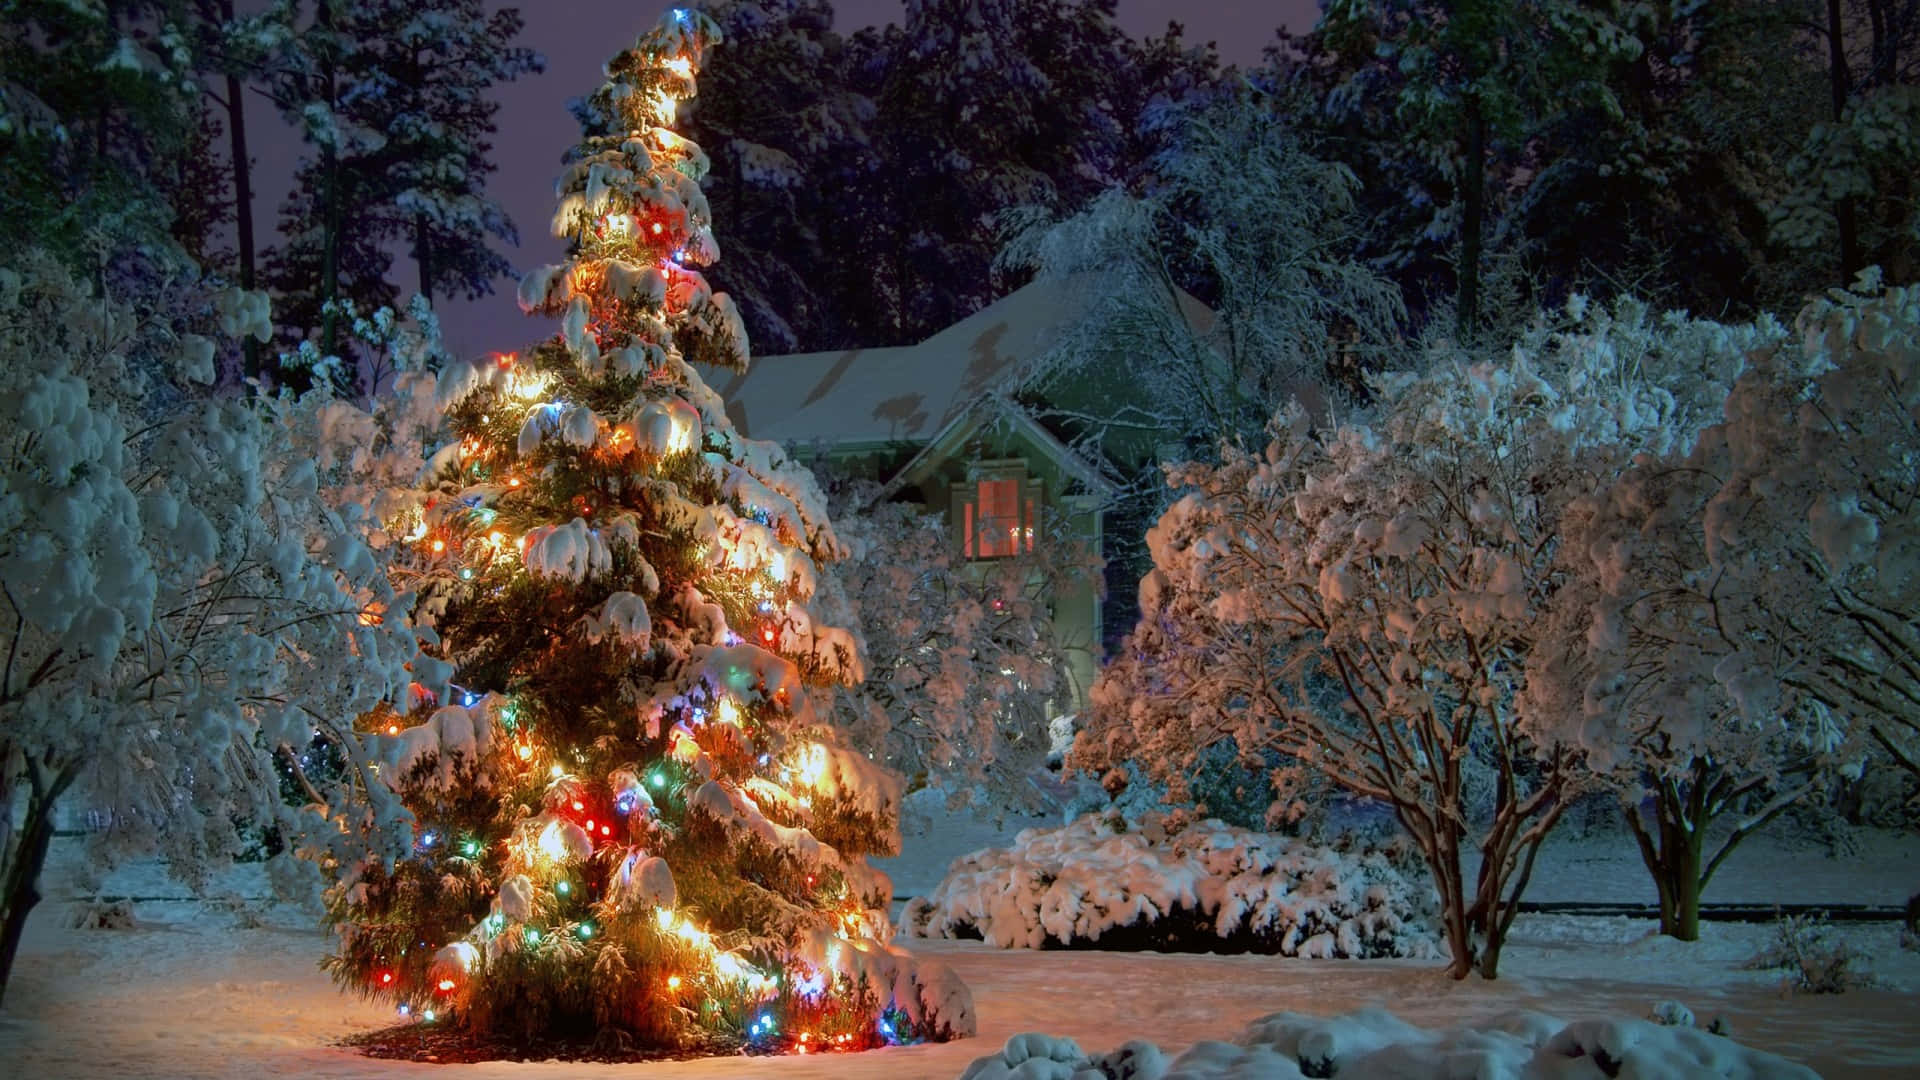 Julener Sikker På At Medbringe Masser Af Glæde Og Julestemning Med Dette Smukke Og Festlige Juletræ Som Midtpunkt.